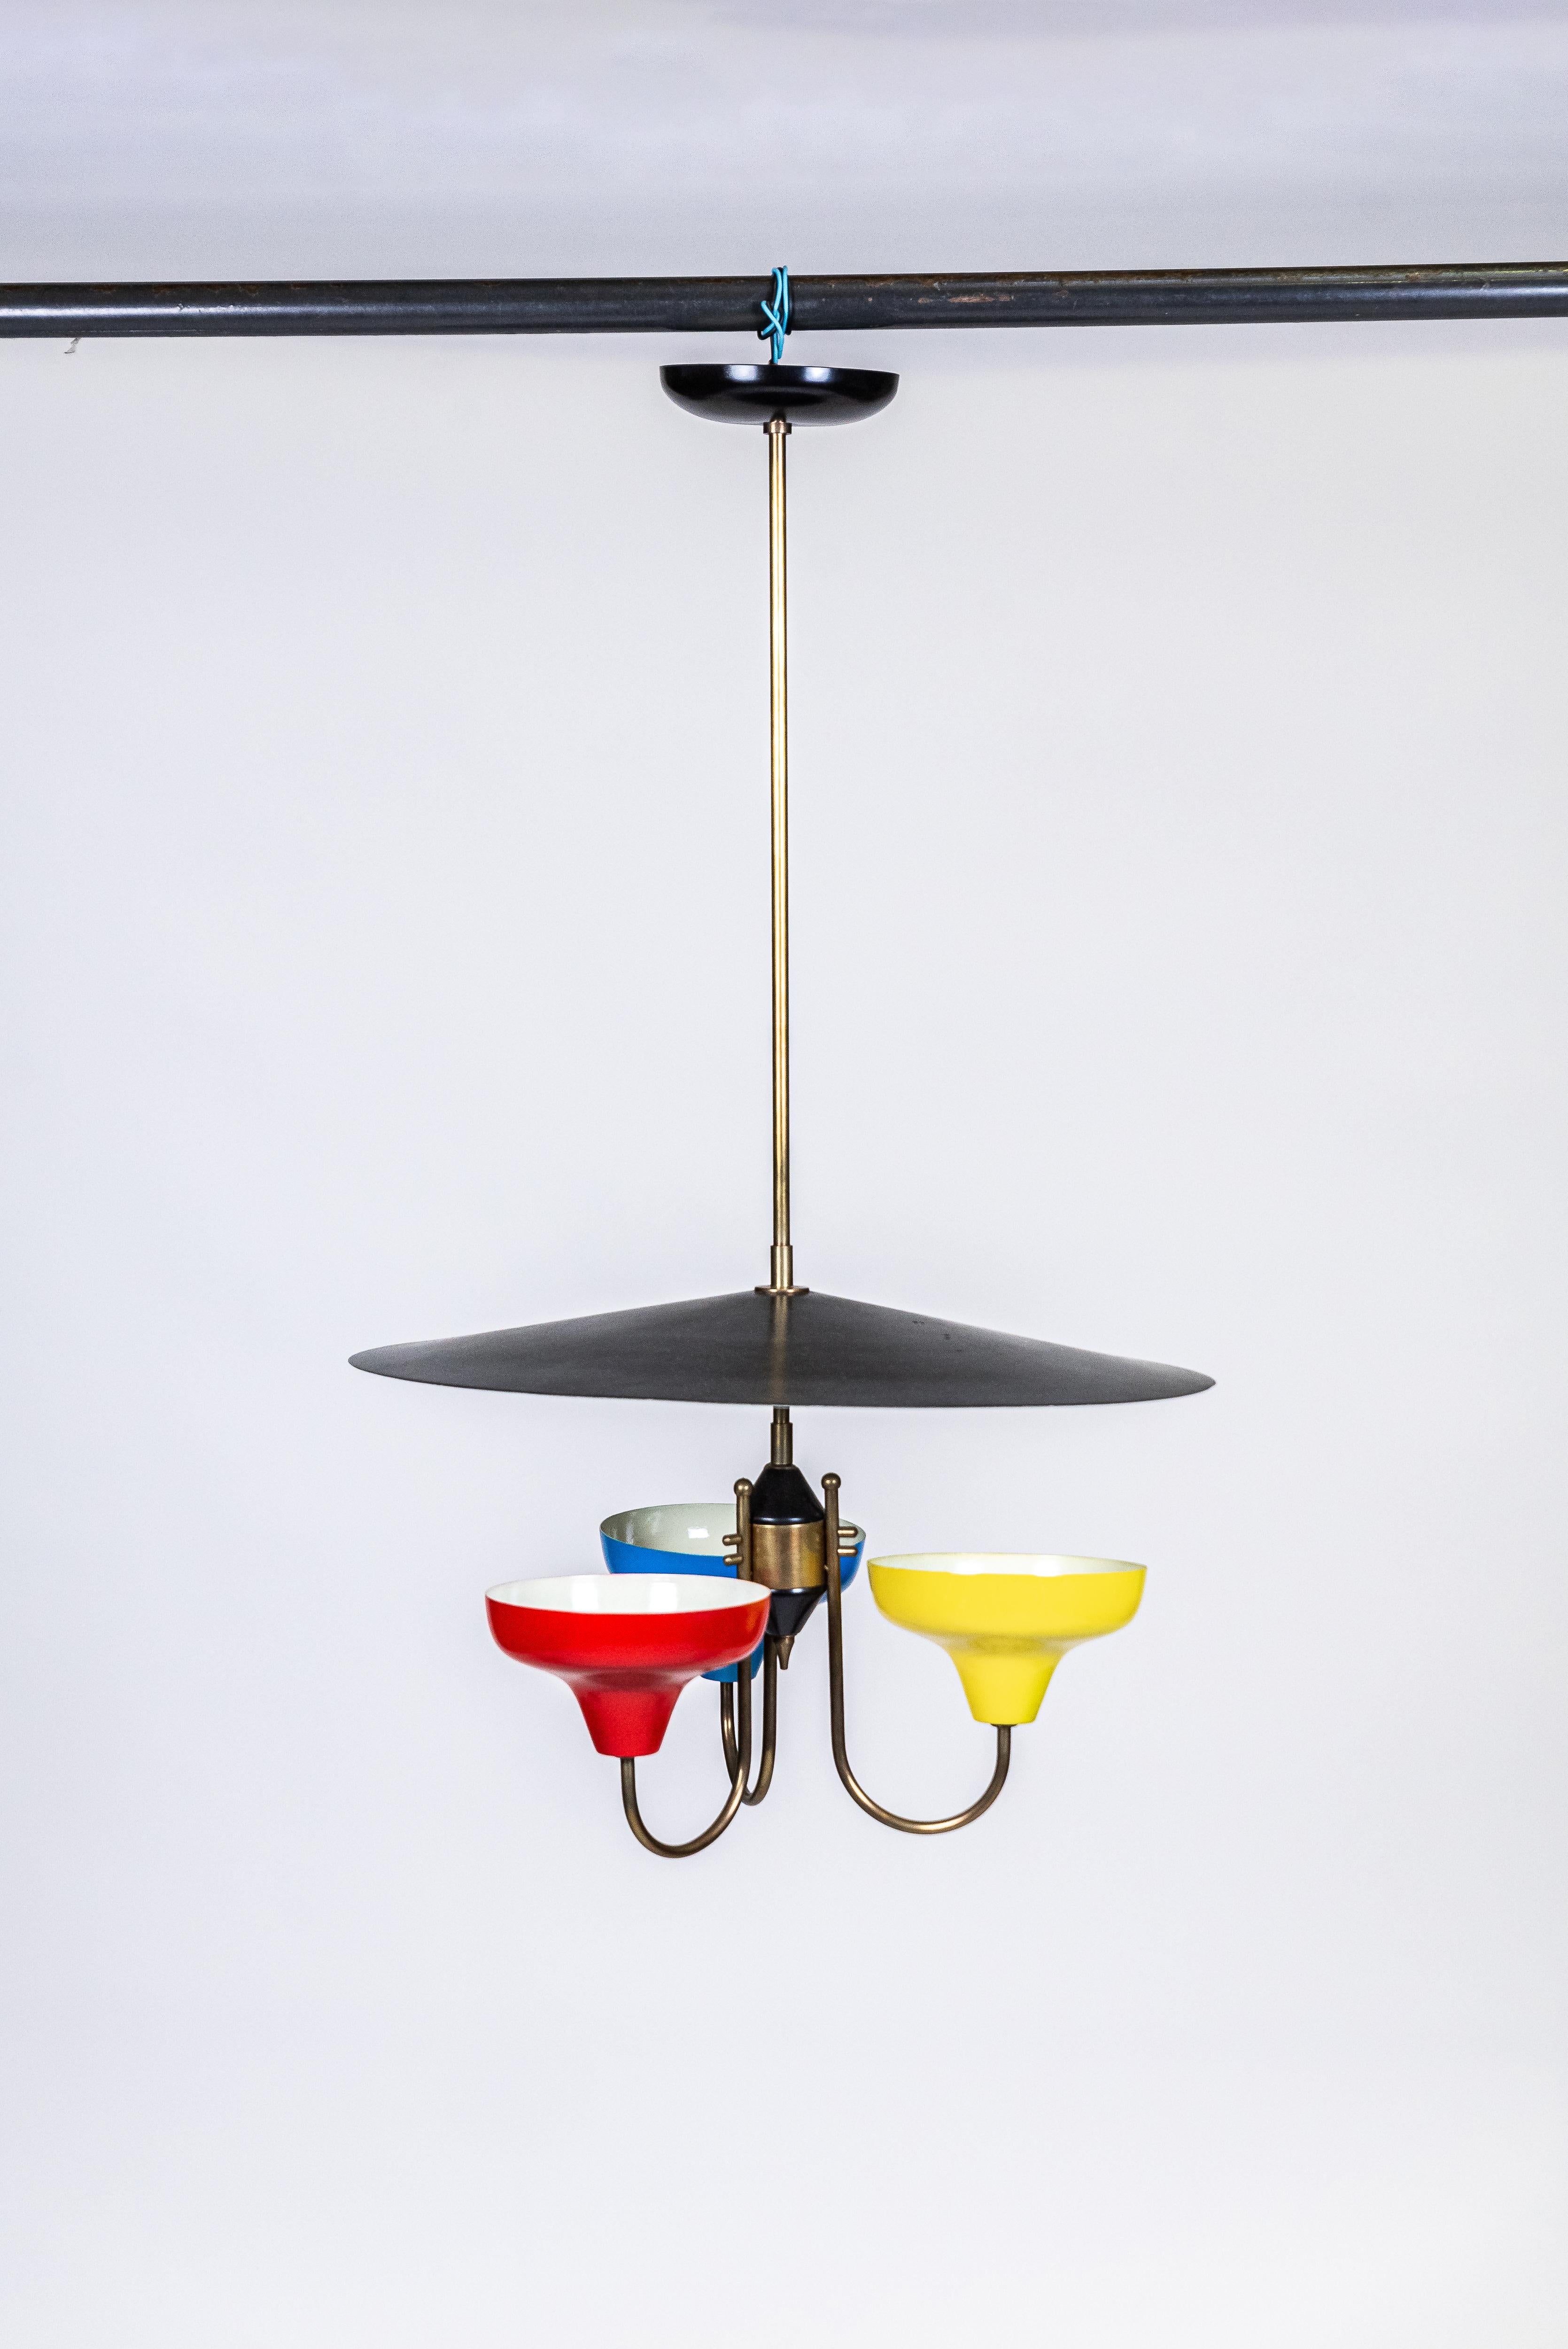 Design brésilien
Lustre, c. 1950
Métal et laiton
Suspension et 3 coupes en métal de couleurs rouge, bleu et jaune ; plateau et dôme en blanc et noir, support et détails en laiton doré. En état de fonctionnement.